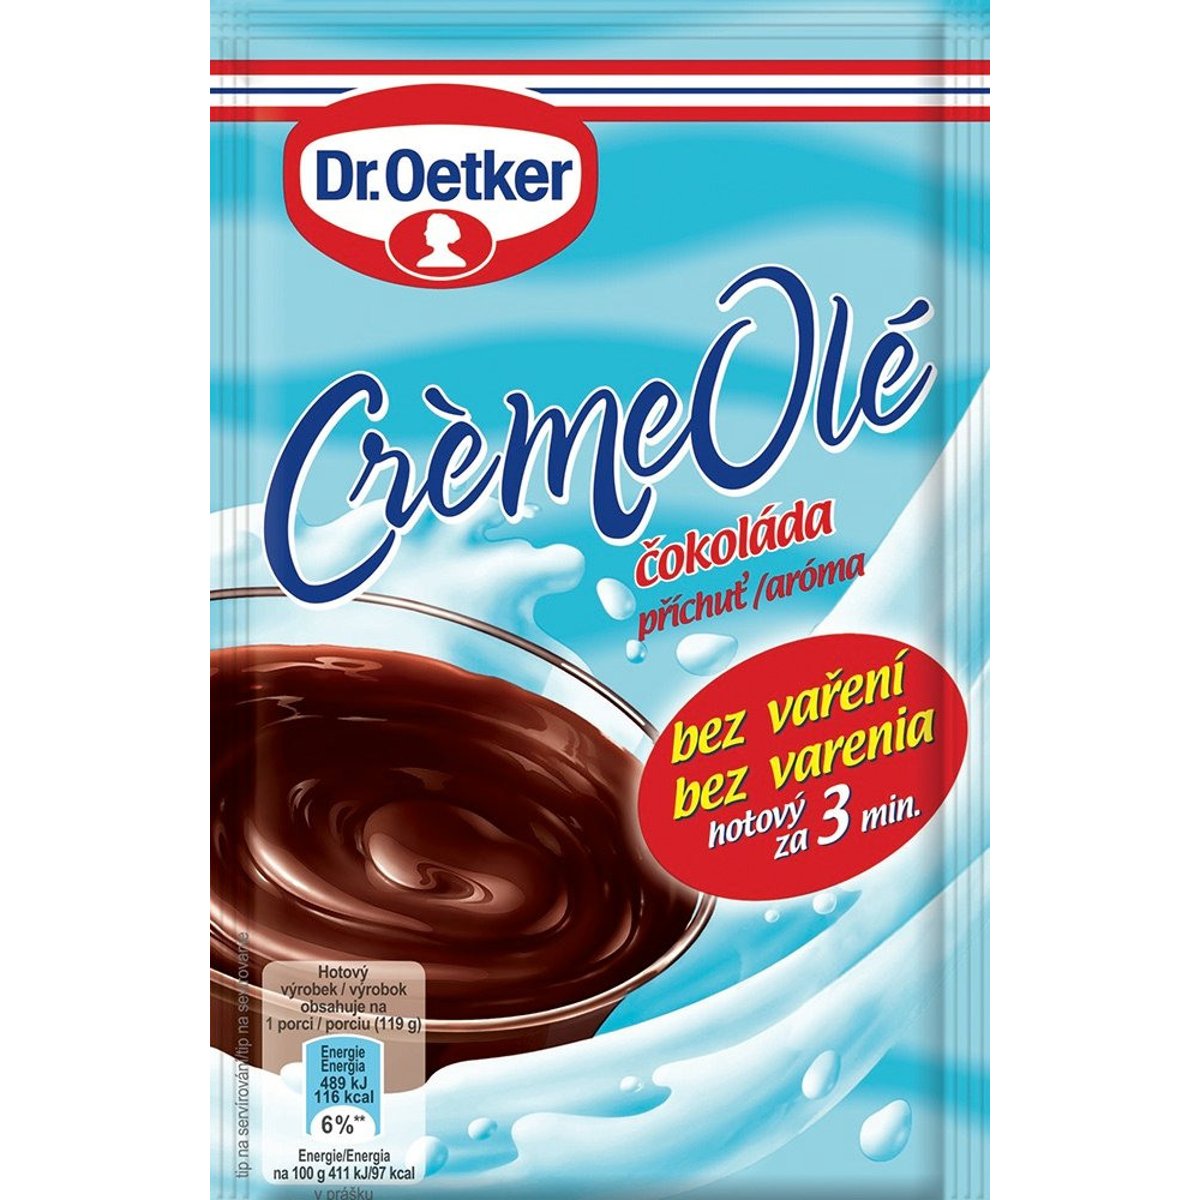 Dr.Oetker Créme Olé puding čokoládový v akci